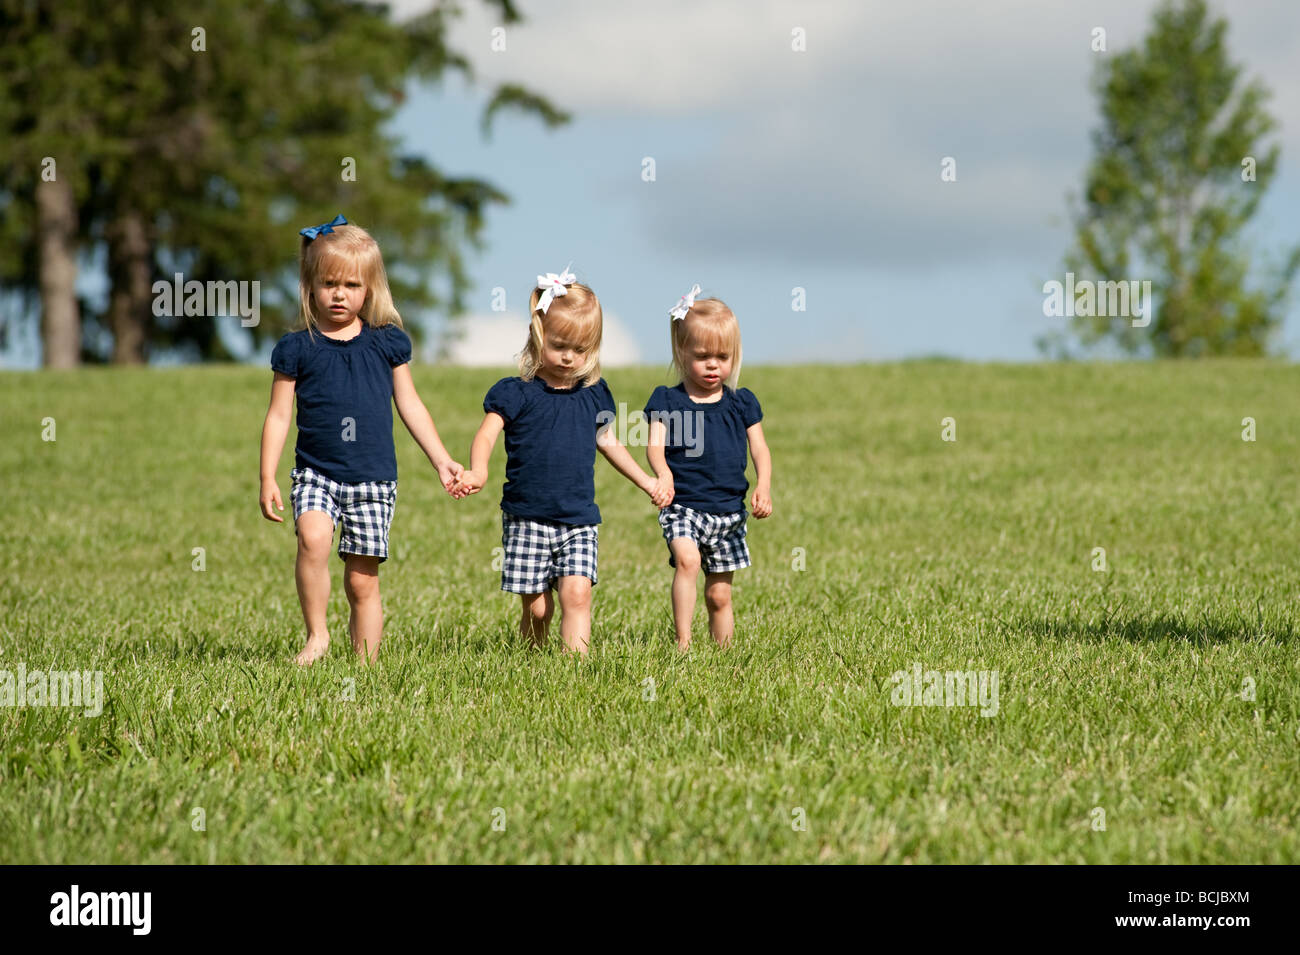 Trois petites filles, sœurs, tenant les mains de marcher ensemble dans les champs tout habillé. Deux des filles sont des jumeaux Banque D'Images